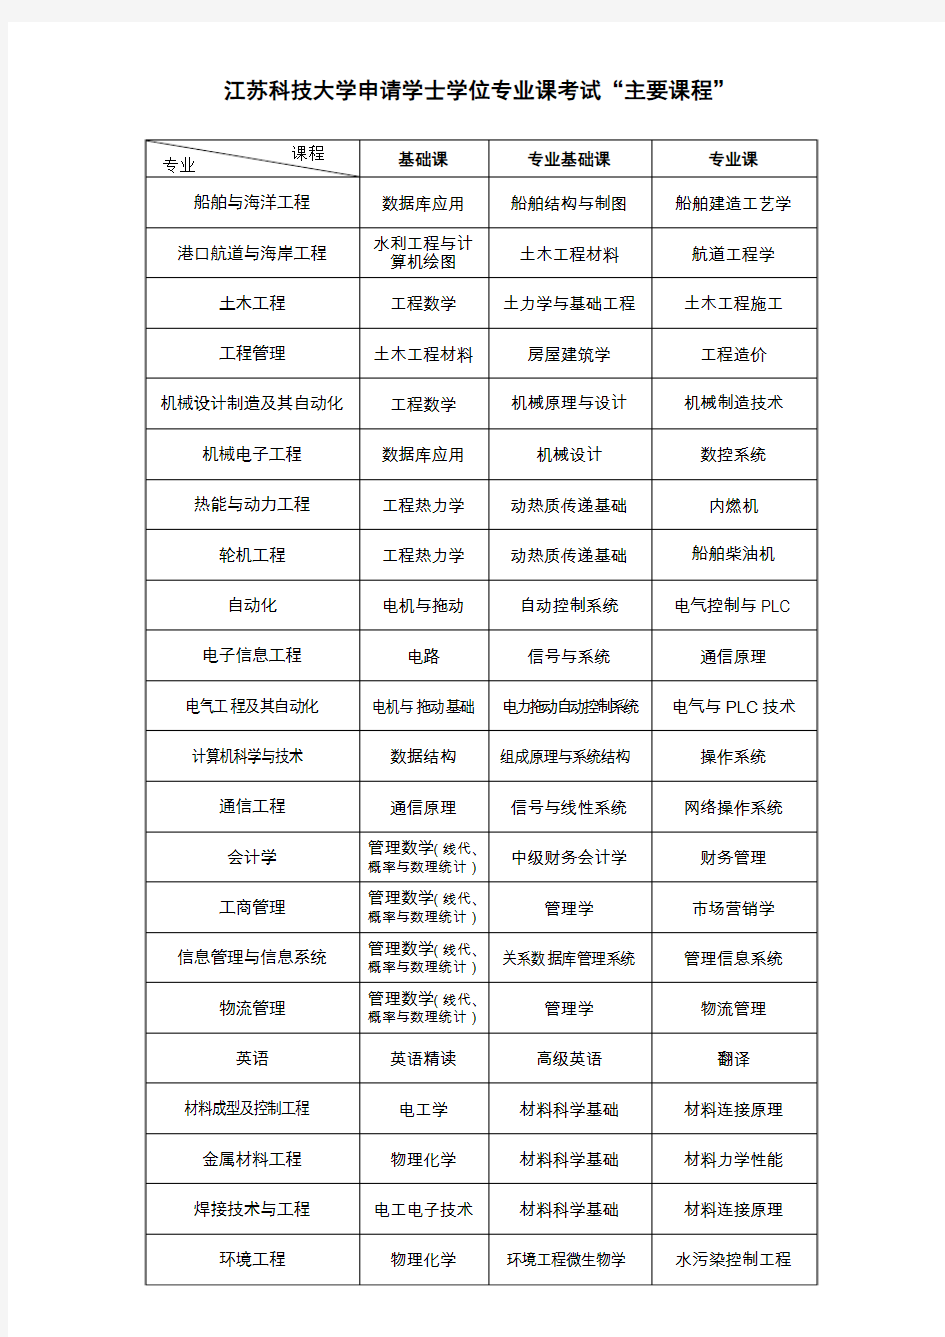 江苏科技大学申请学士学位专业课考试主要课程